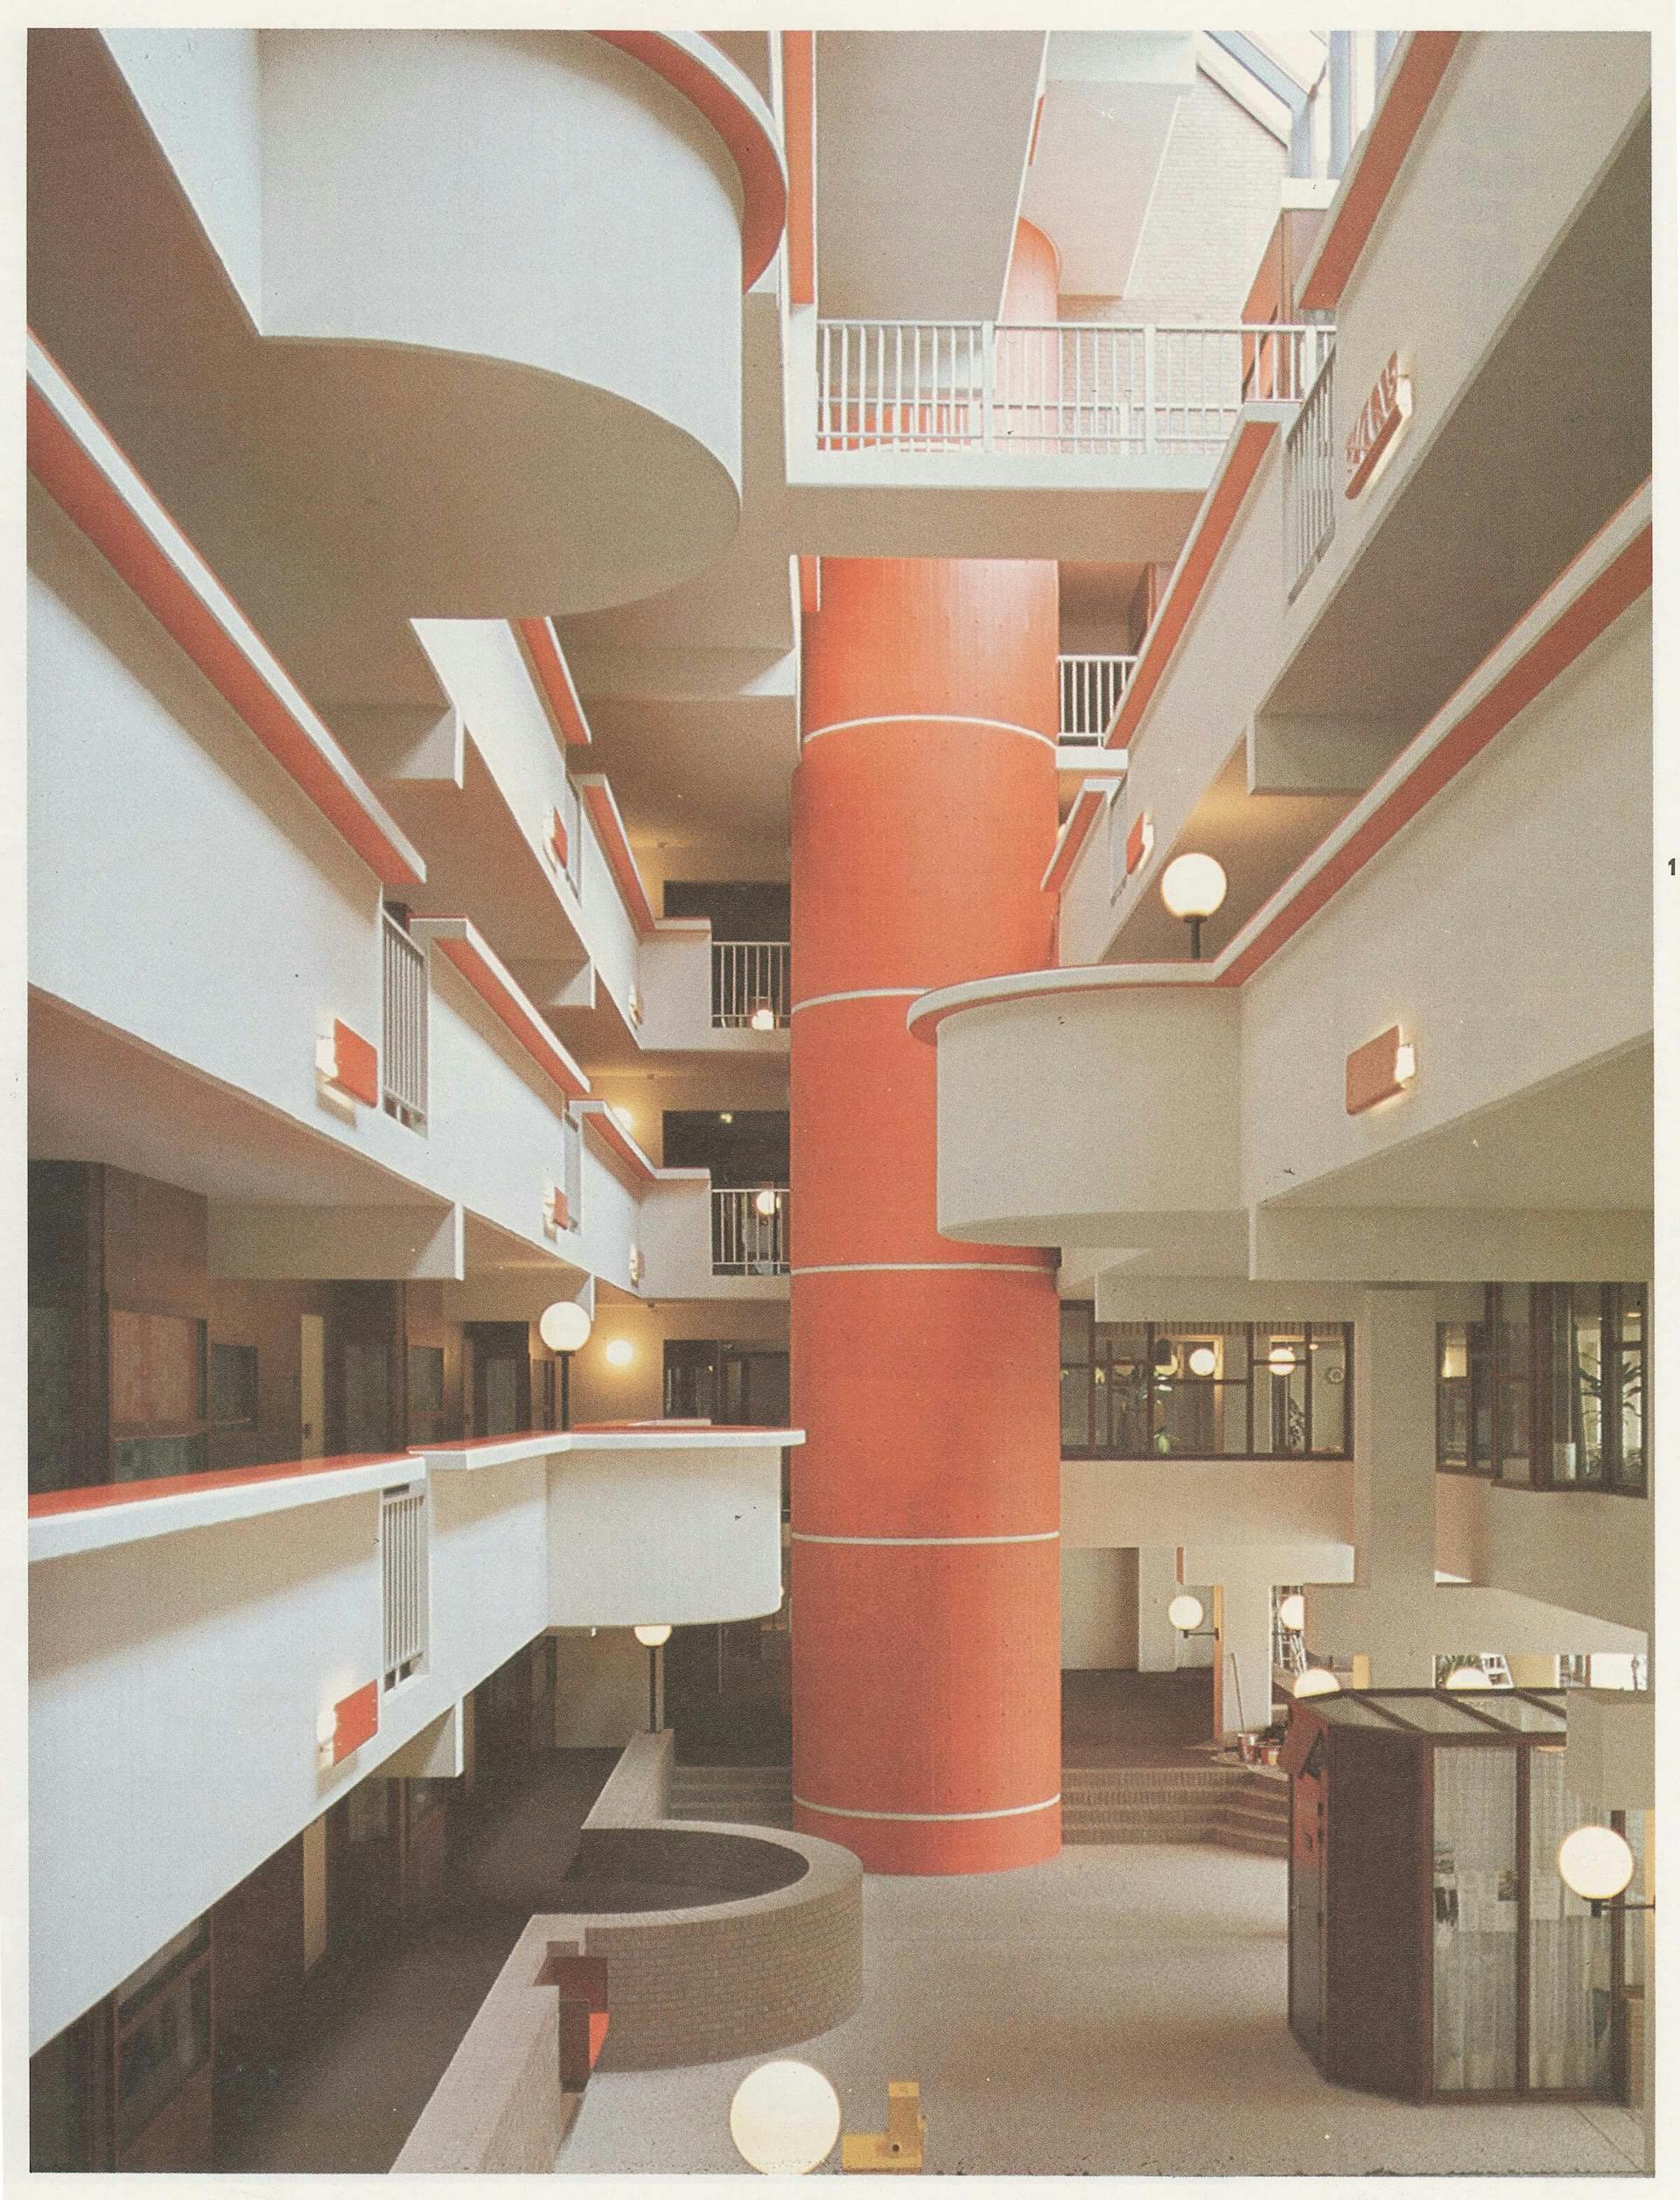 E. Hartsuyker en L. Hartsuyker-Curjel. Interieur van bejaardencomplex Zonnetrap in Rotterdam, 1970. Fotograaf onbekend. Collectie Het Nieuwe Instituut, HART d143 